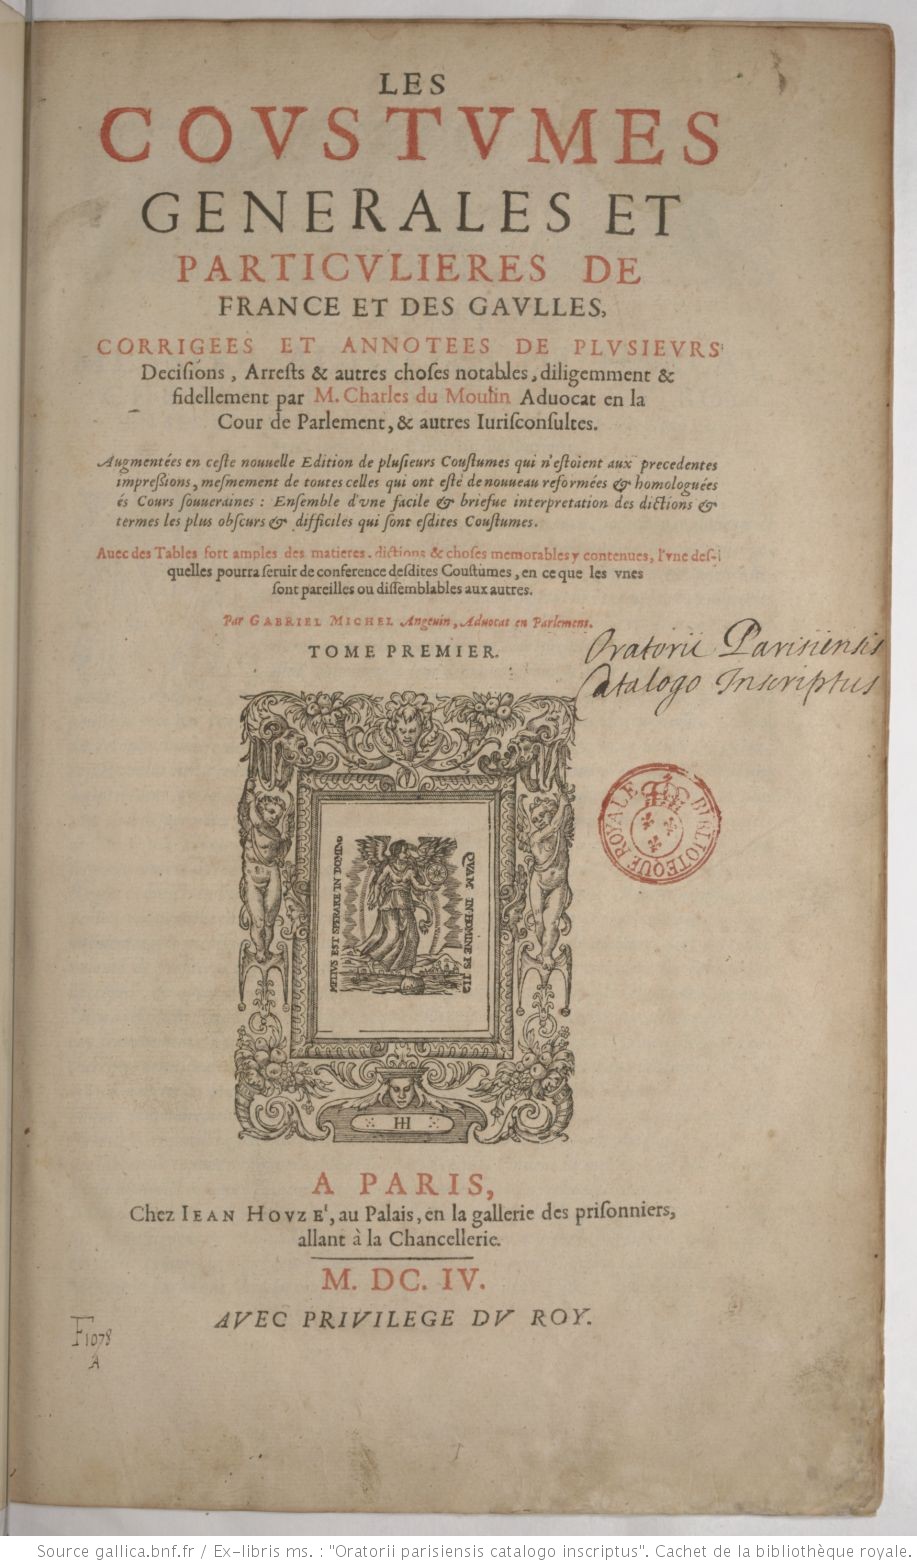 Accéder à la page "Coustumes generales et particulieres de France et des gaulles. Tome premier, 1604"